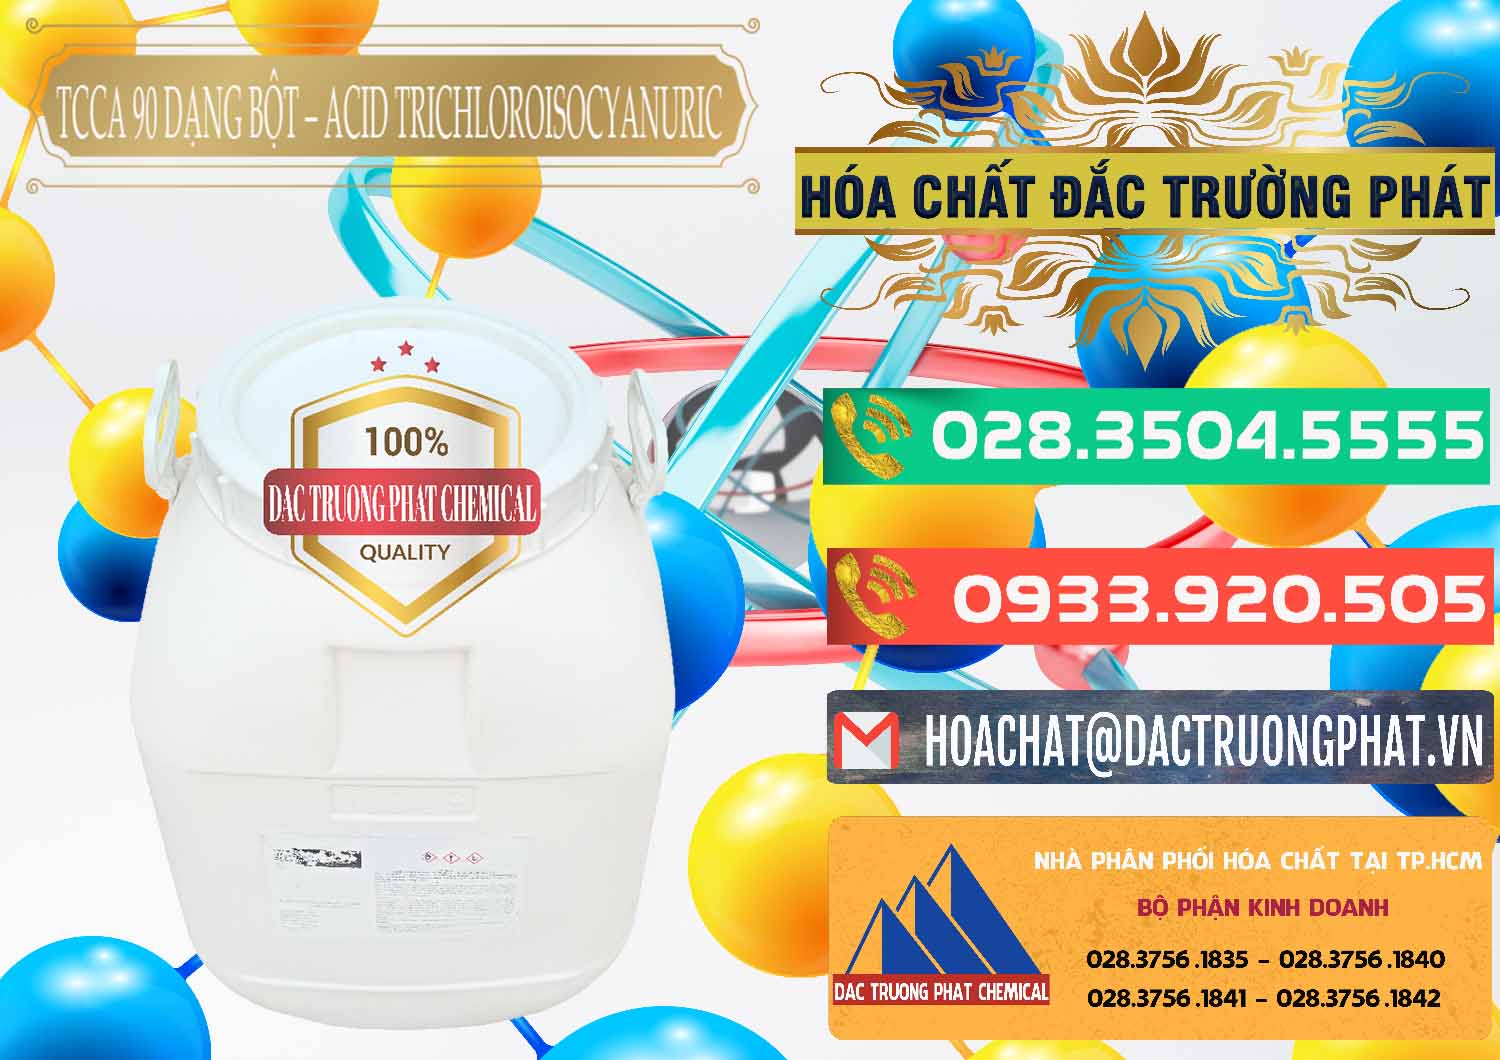 Đơn vị chuyên cung cấp & bán TCCA - Acid Trichloroisocyanuric 90% Dạng Bột Trung Quốc China - 0161 - Đơn vị chuyên kinh doanh ( phân phối ) hóa chất tại TP.HCM - congtyhoachat.com.vn